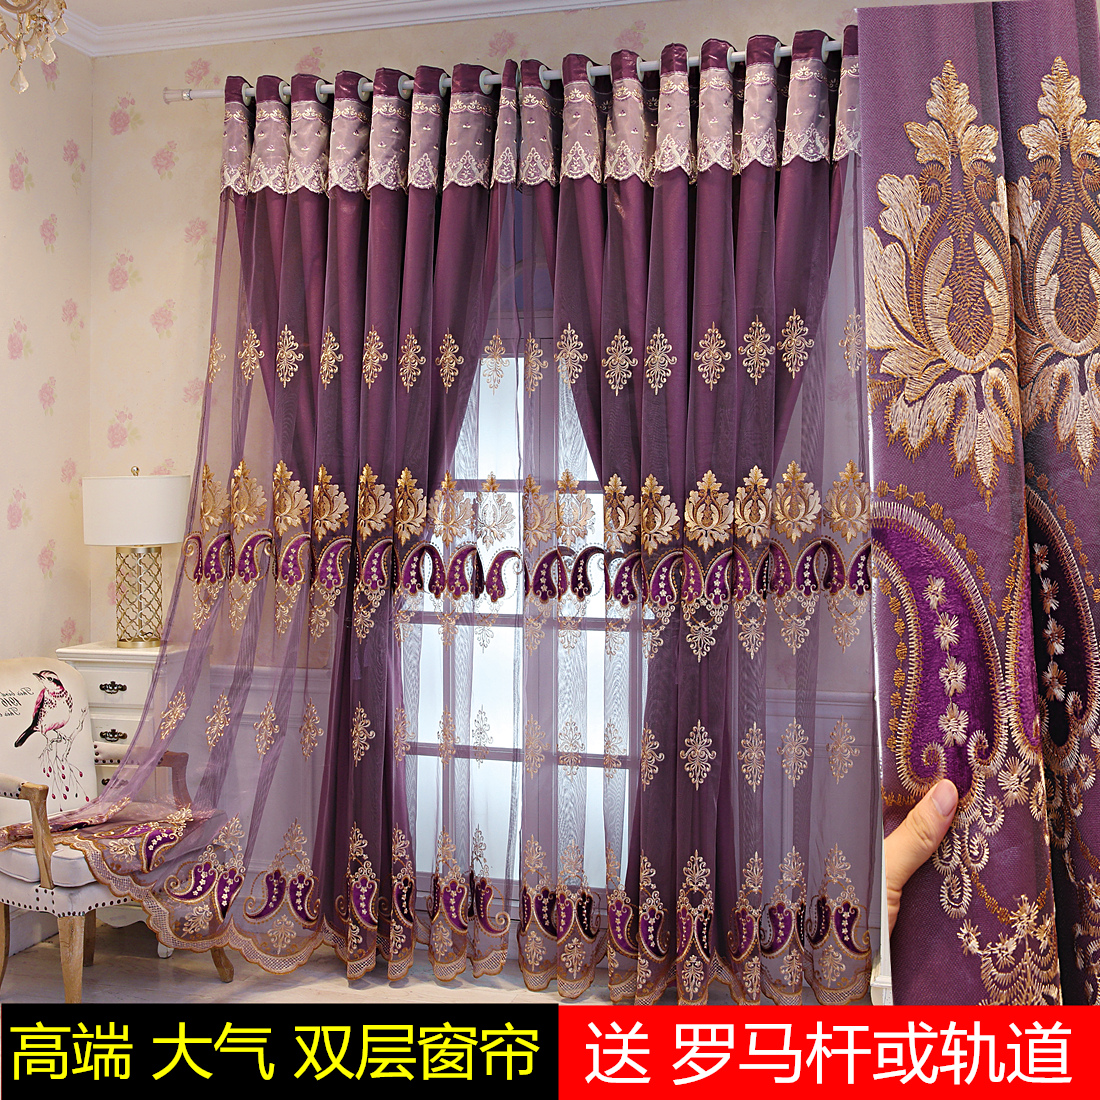 2021欧式双层绣花窗帘定制客厅卧室遮光成品落地飘窗布纱一体定制